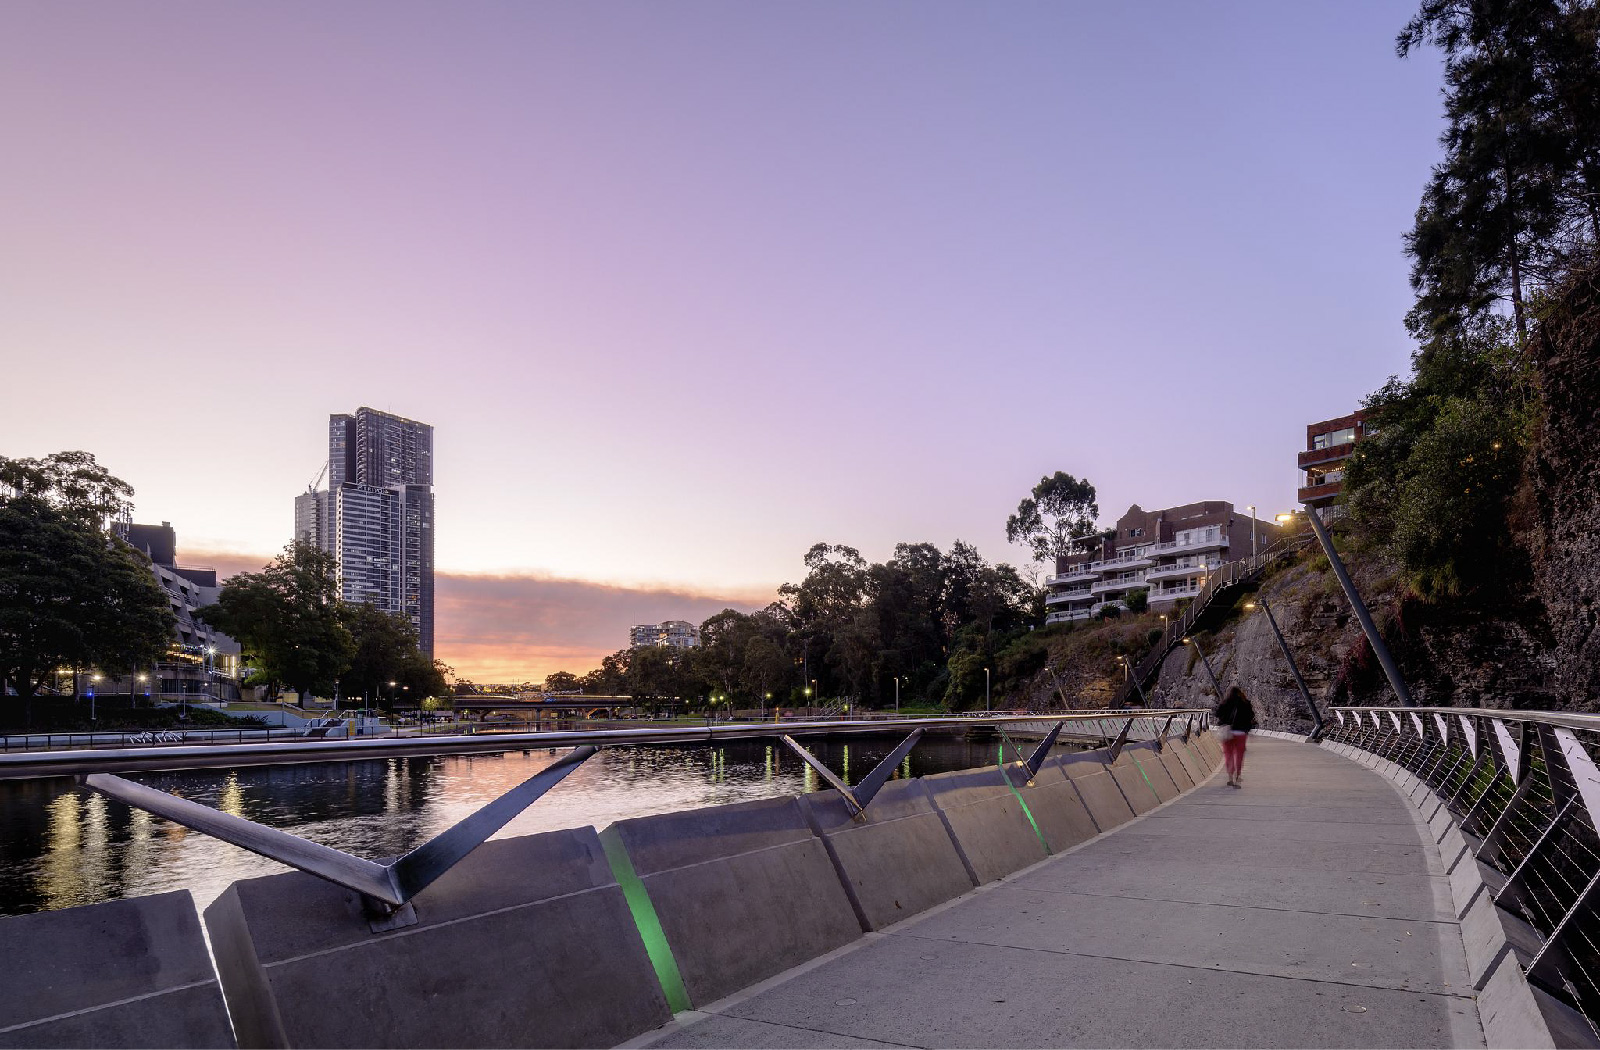 Parramatta Escarpment Boardwalk at dusk- Urban infrastructure cycleway by McGregor Westlake Architecture